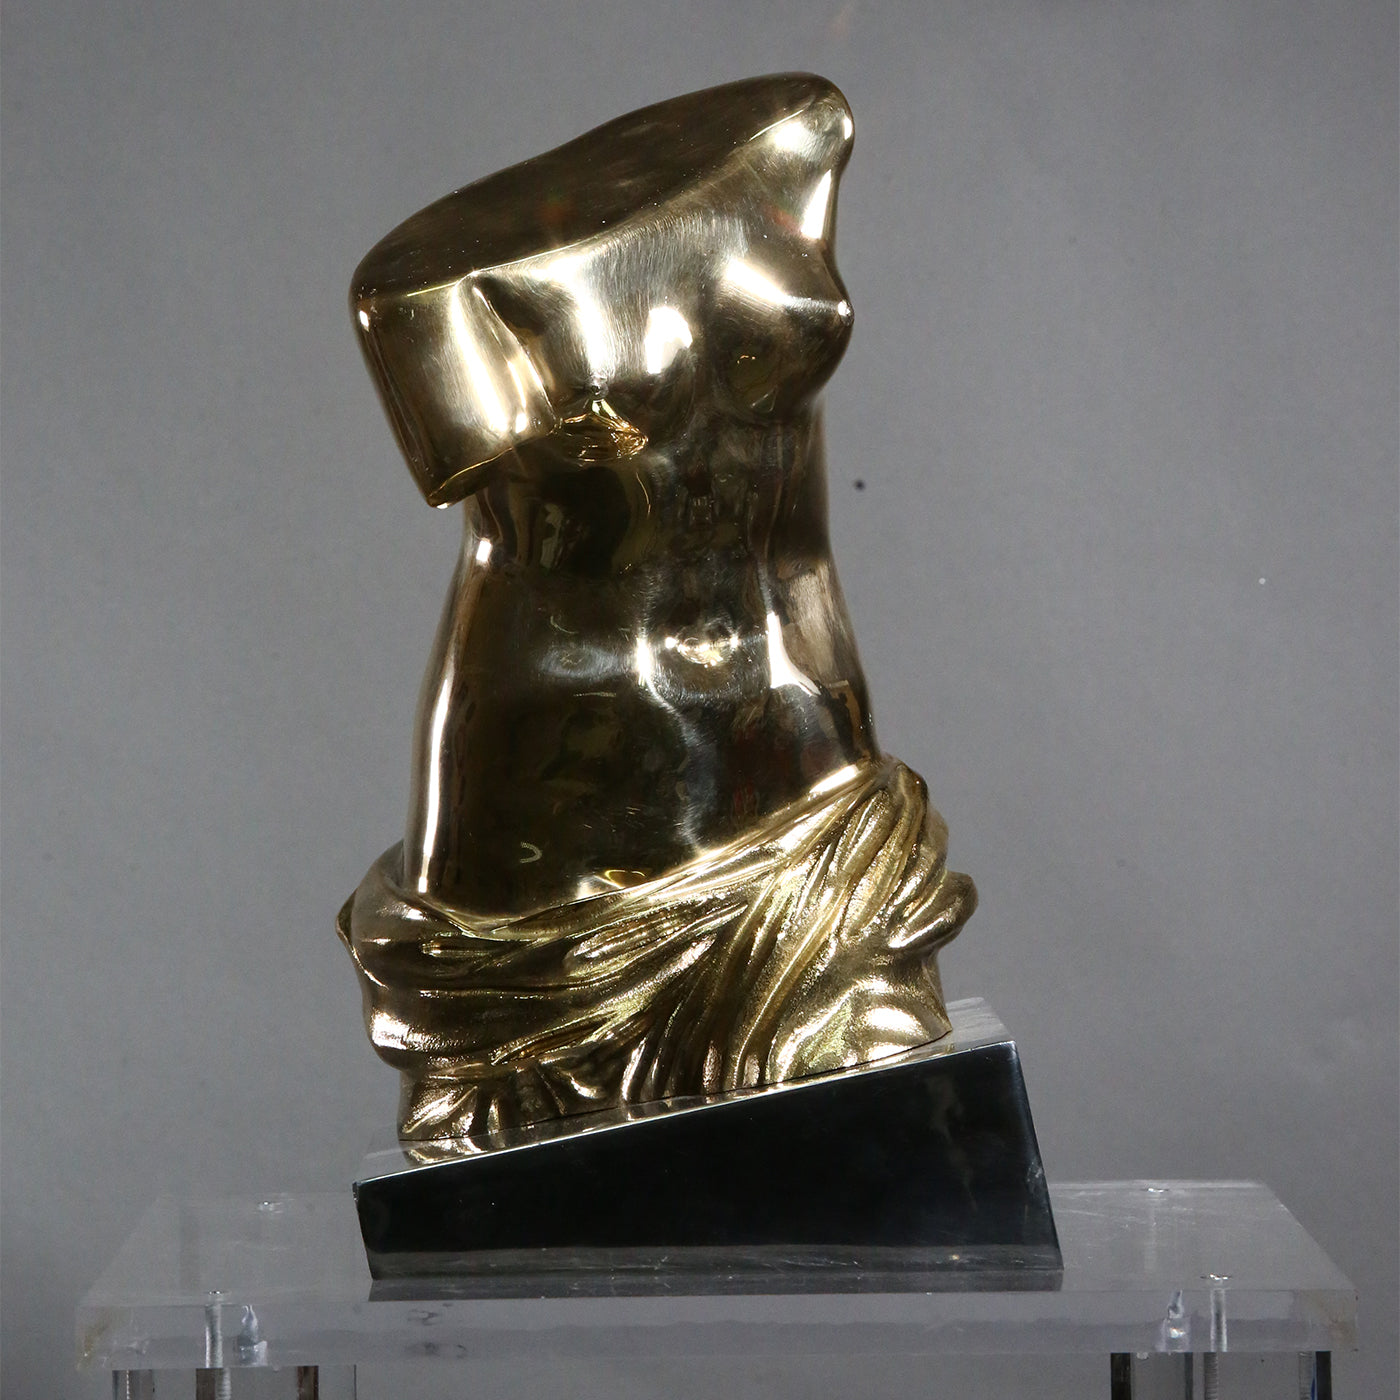 Dorso Venere di Milo moderno bronze Statuette - Alternative view 1